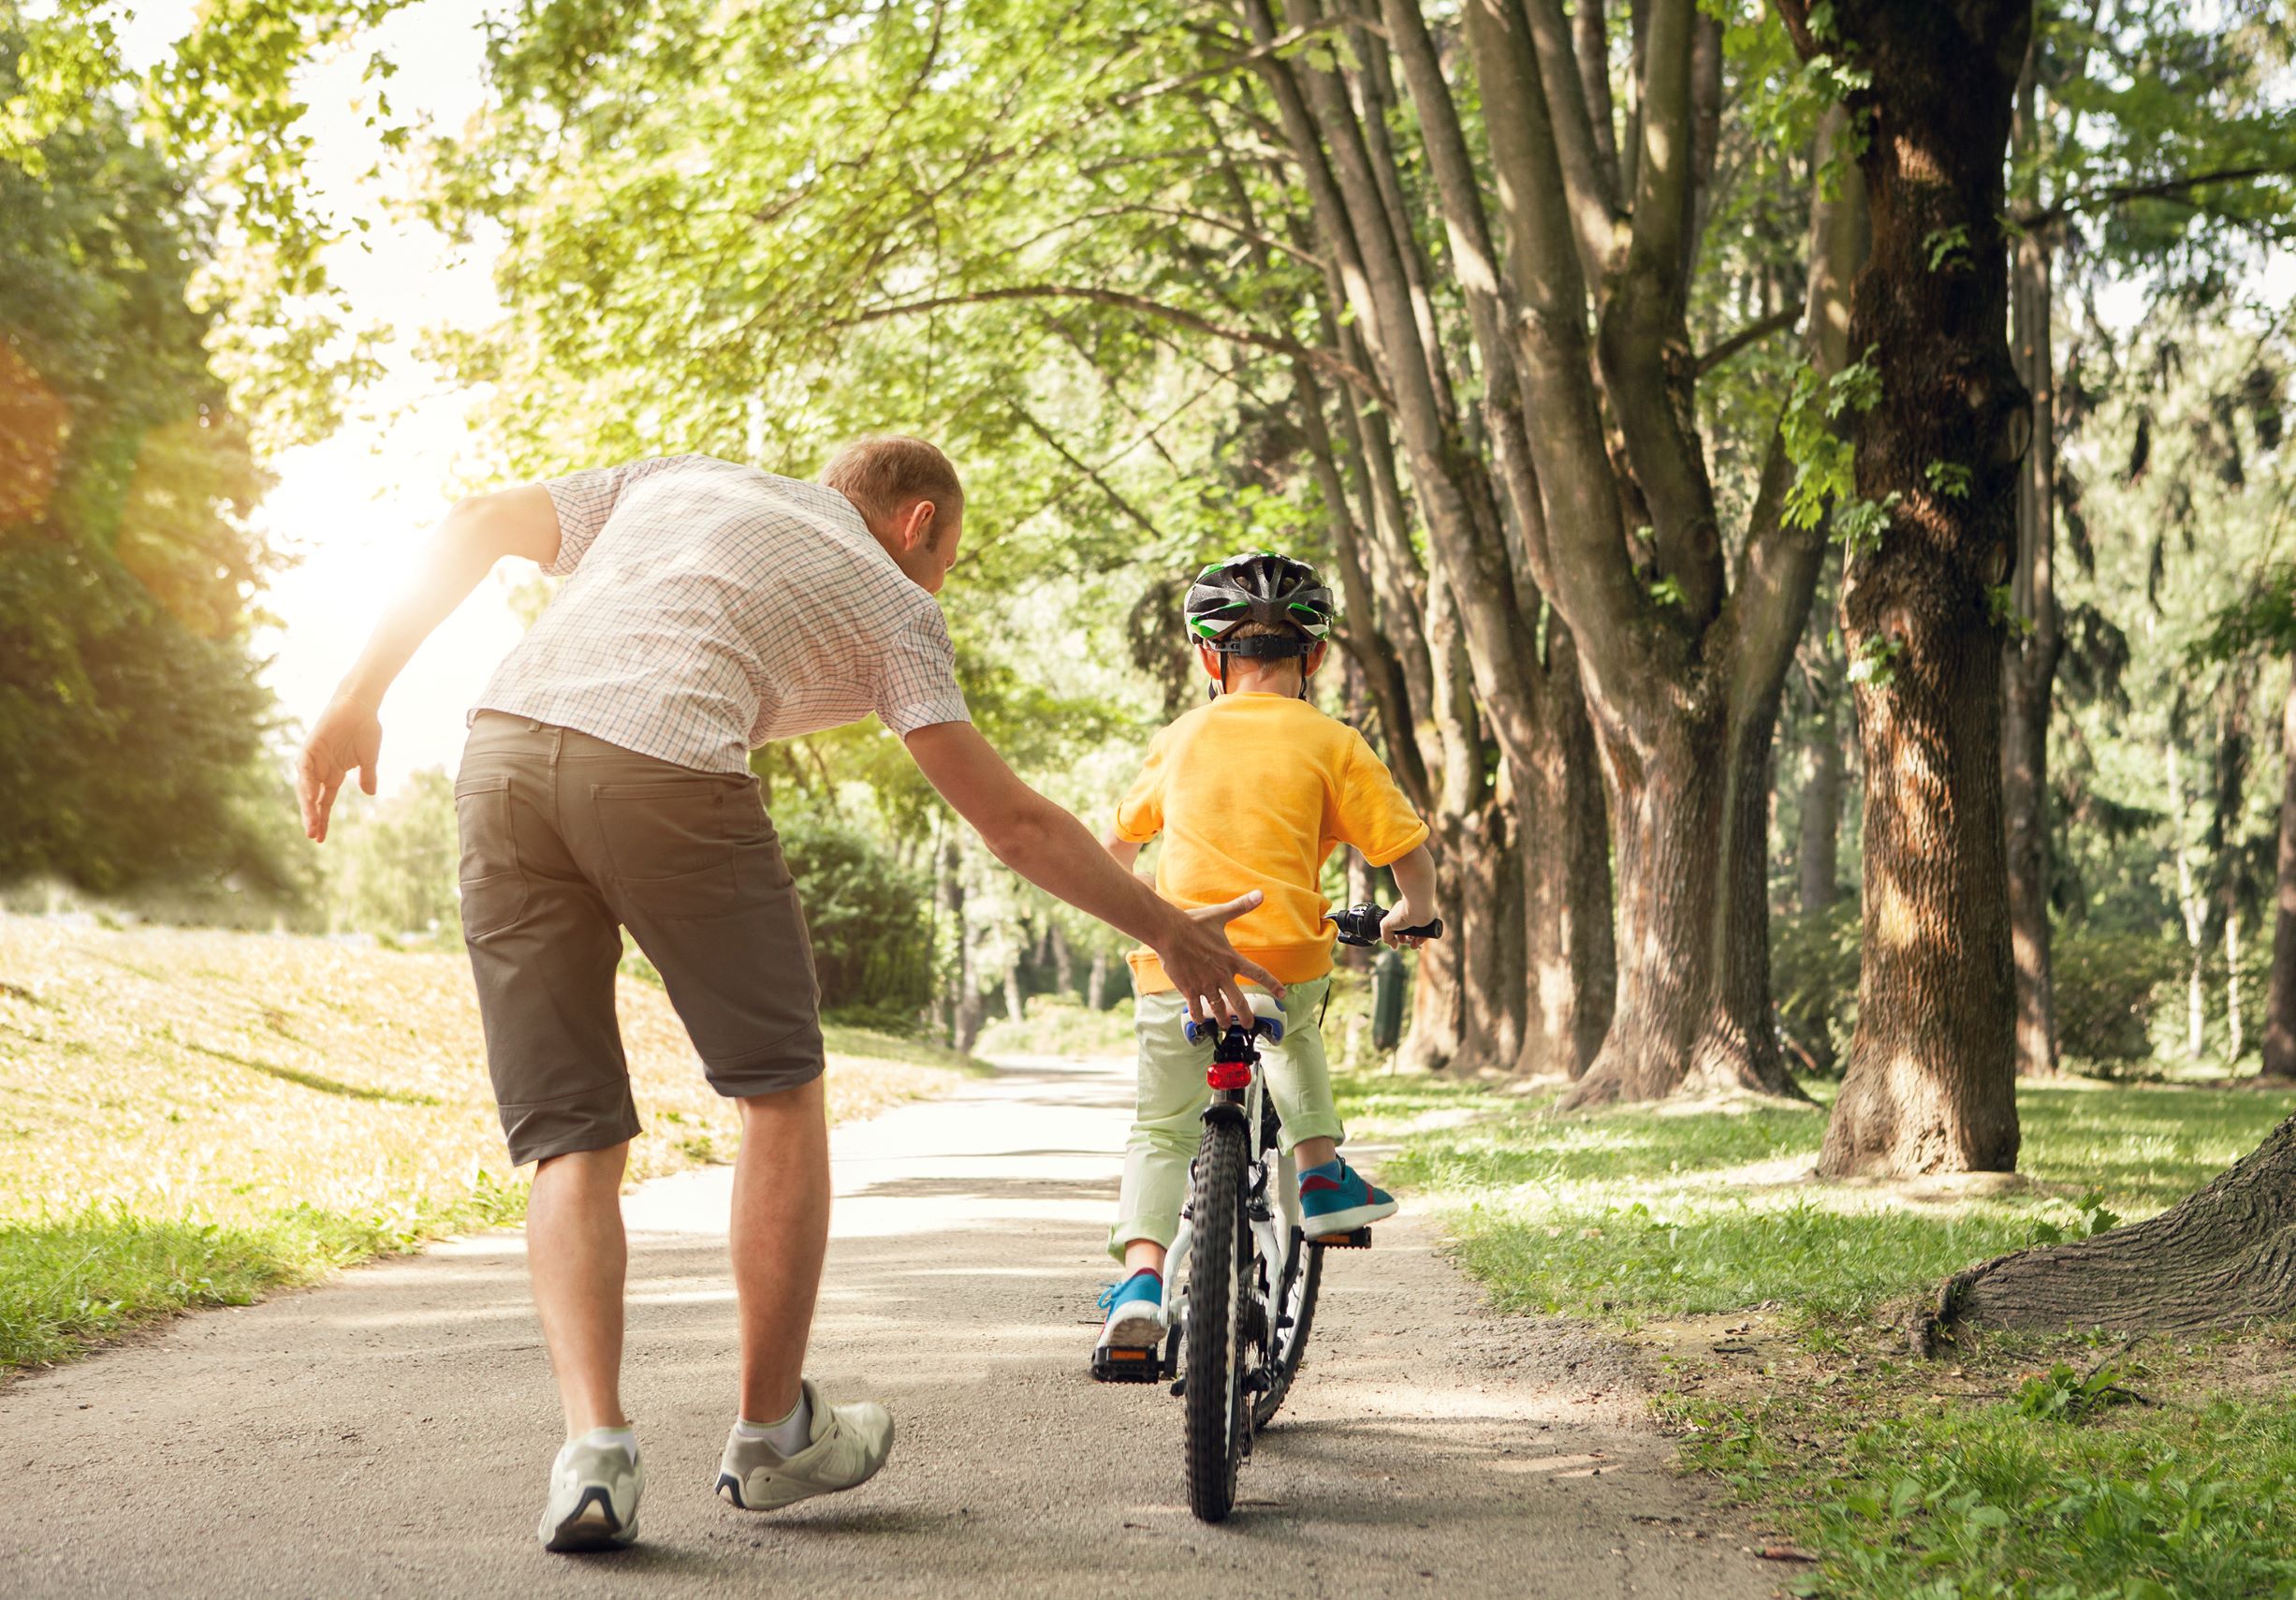 ojciec uczy syna jeździć na rowerze